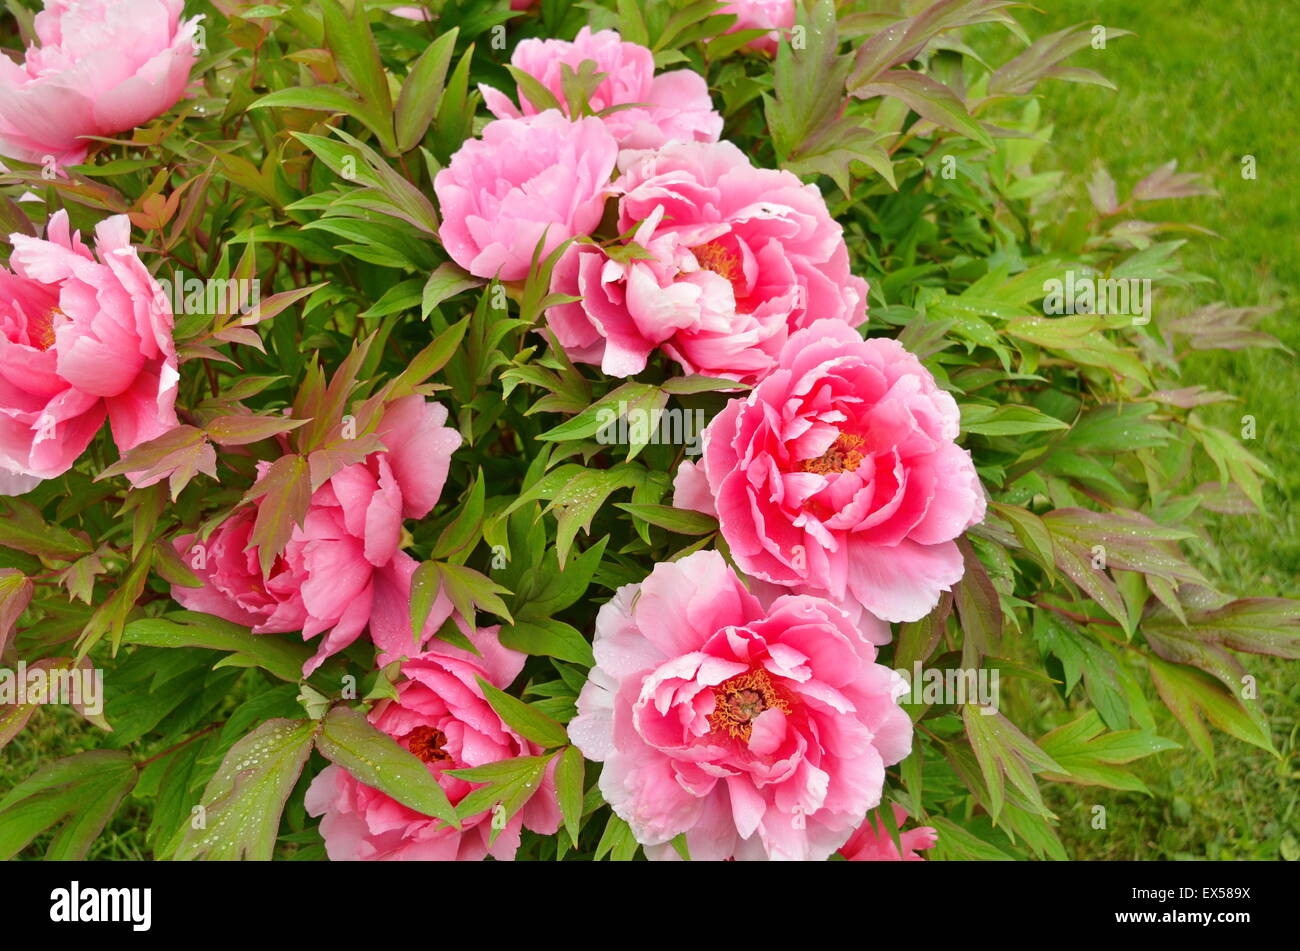 Pfingstrosen Blumen in einem grünen Garten im freien Stockfoto